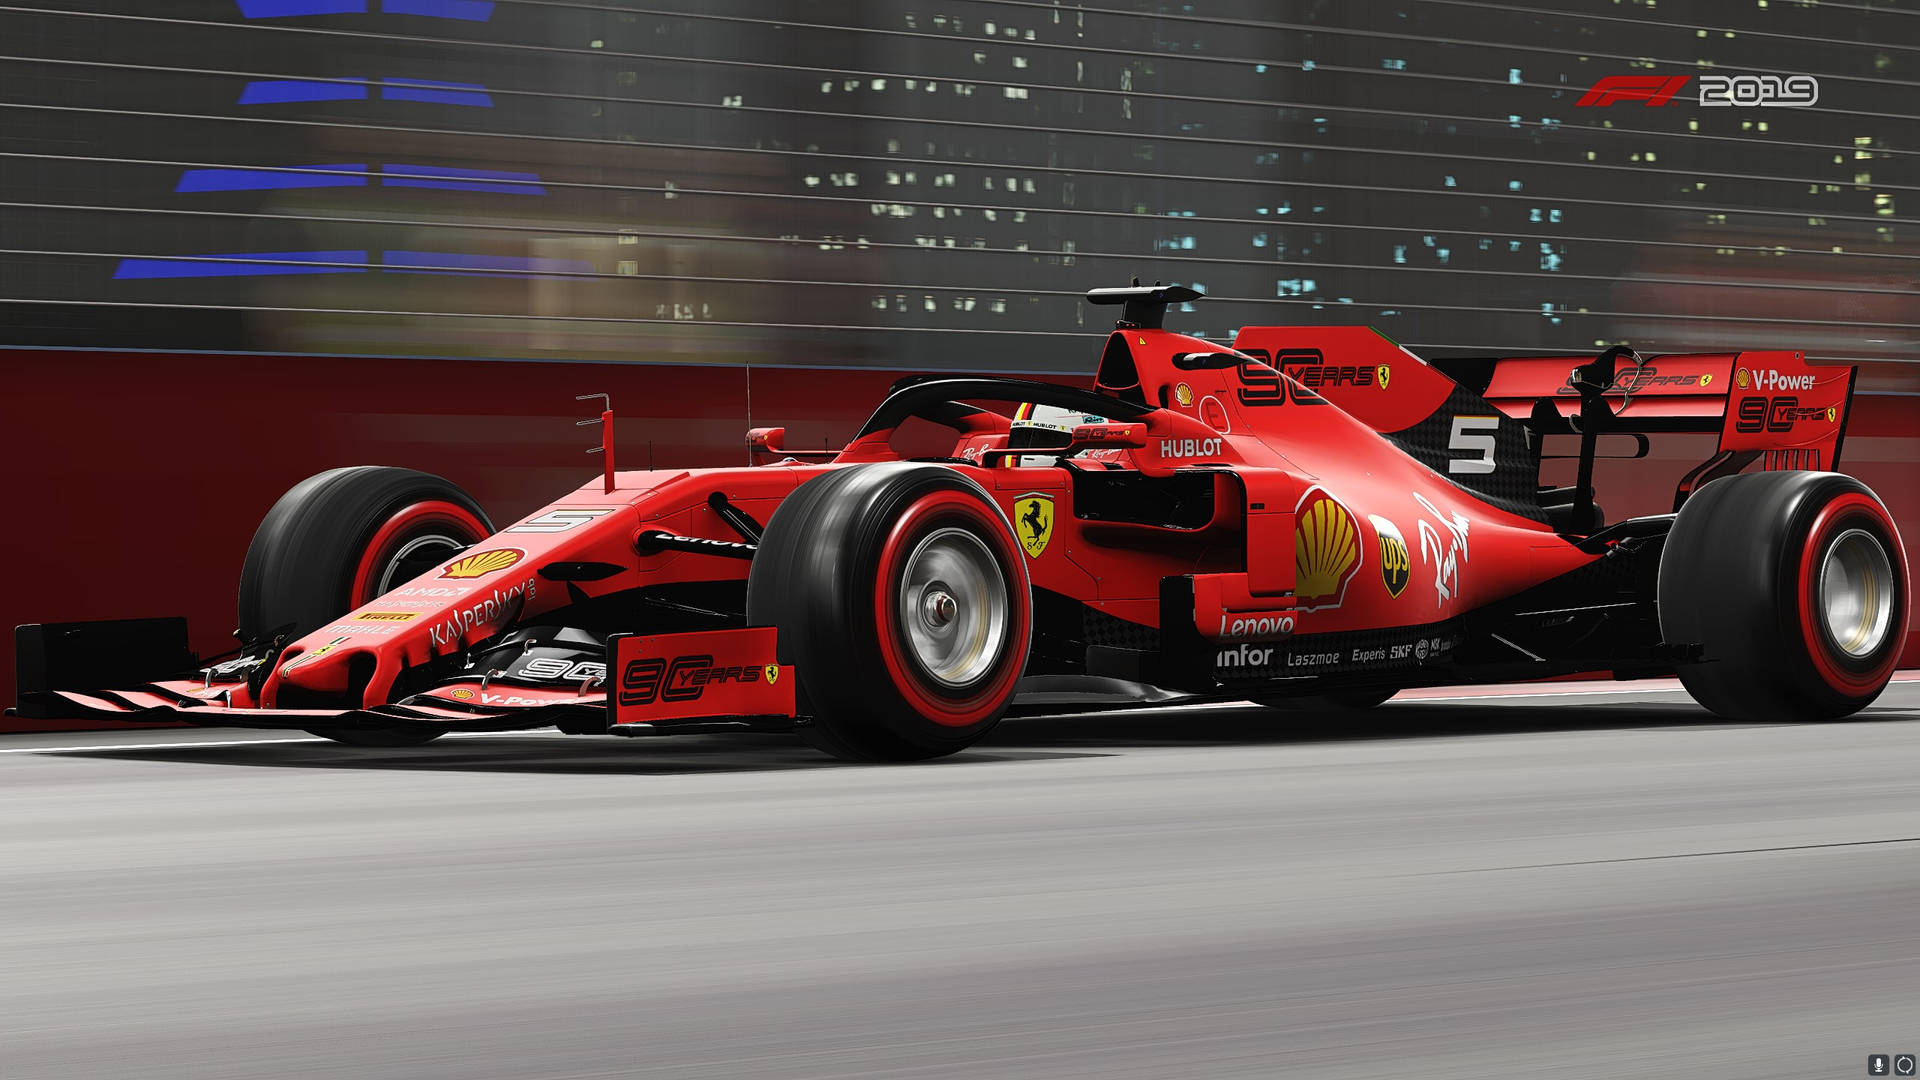 Ferrari In F1 2019 Background